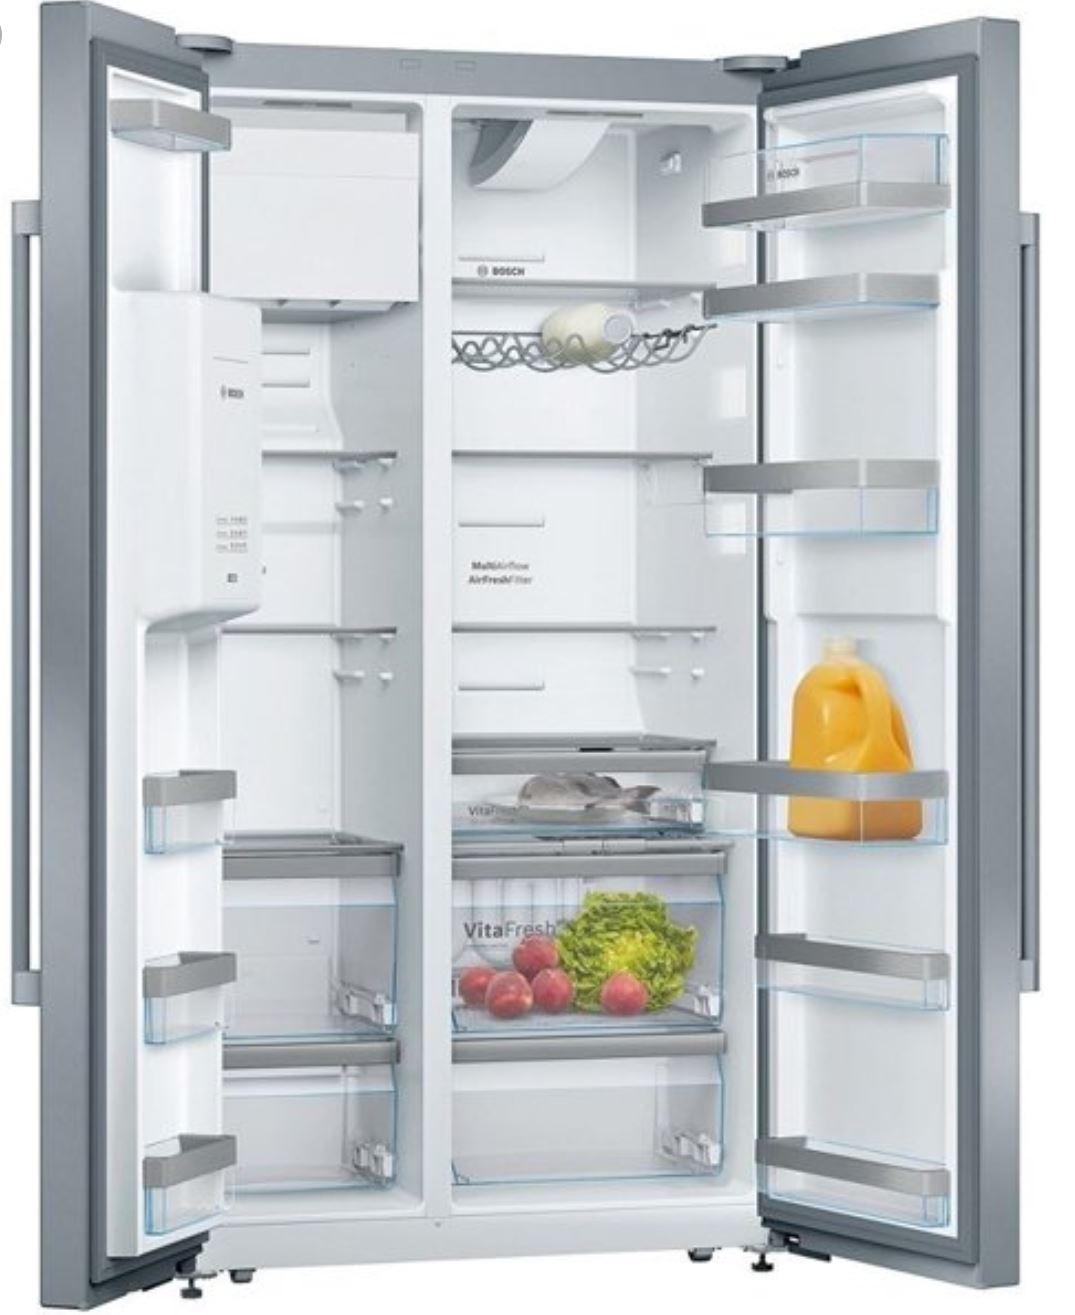 Bosch купить в туле. Холодильник Bosch food- Center трехкамерный. Холодильник Bosch Fresh Center. Холодильник Bosch Multi-Airflow. Холодильник Bosch 375007.